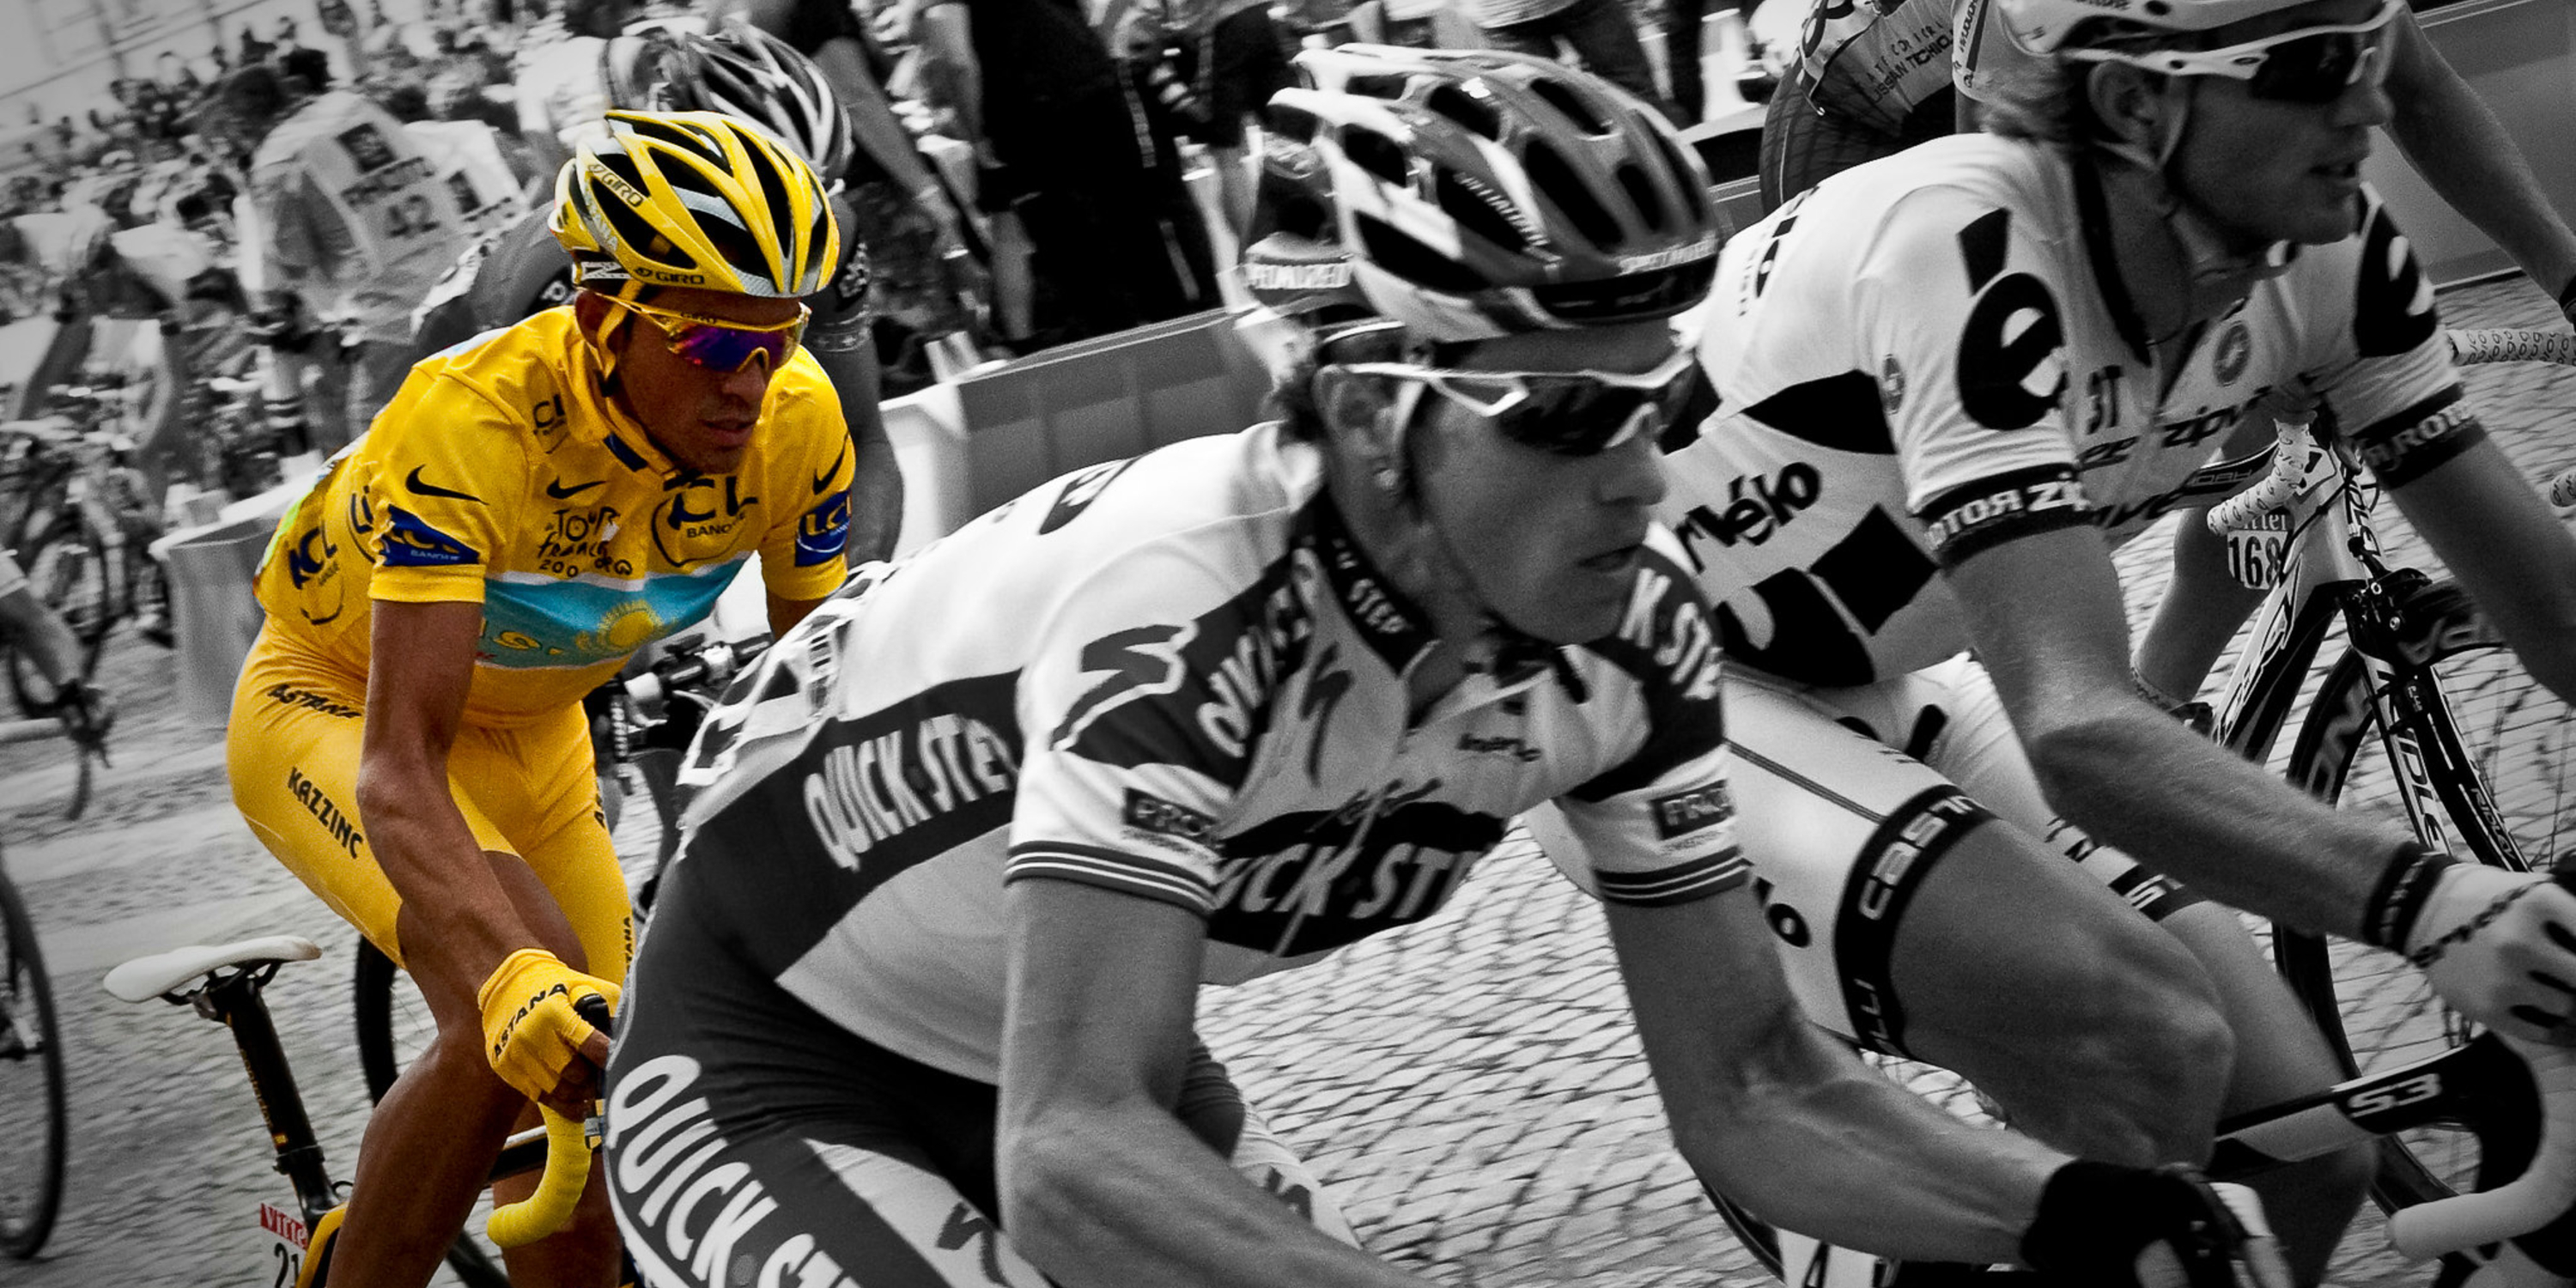 2009 Tour de France winner Alberto Contador